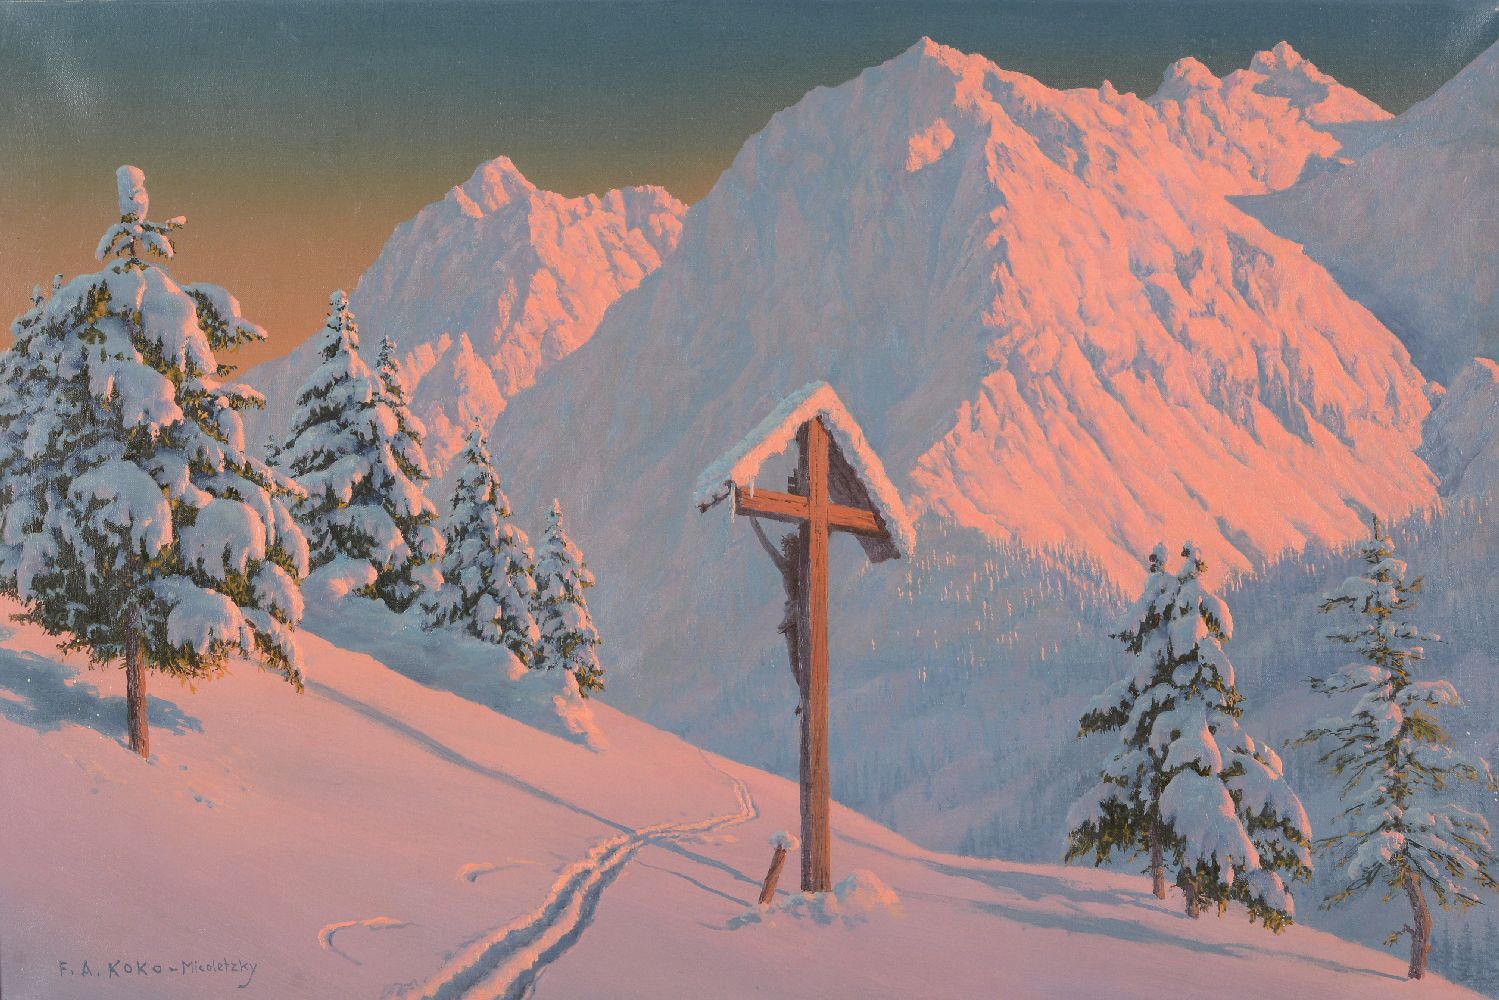 λ Friedrich Albin Koko-Micoletsky (Austrian 1889-1981)Alpine sunset